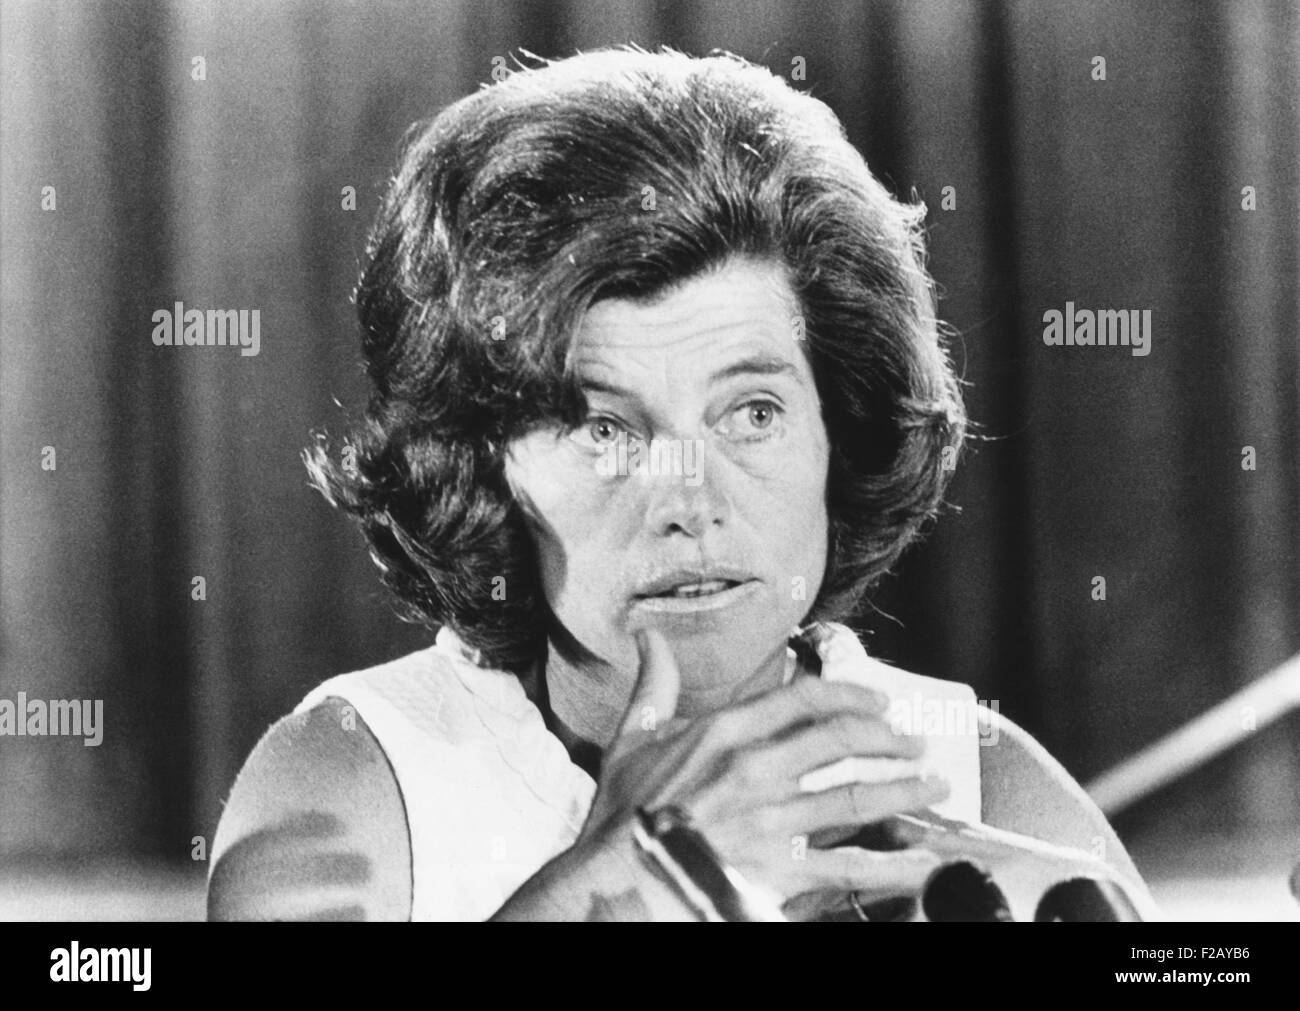 Eunice Kennedy Shriver angekündigt, für eine internationale Konferenz über Abtreibung. 9. August 1967. Shriver war vocal Verfechter von der pro-Life-Bewegung innerhalb der Demokratischen Partei. (CSU 2015 9 798) Stockfoto